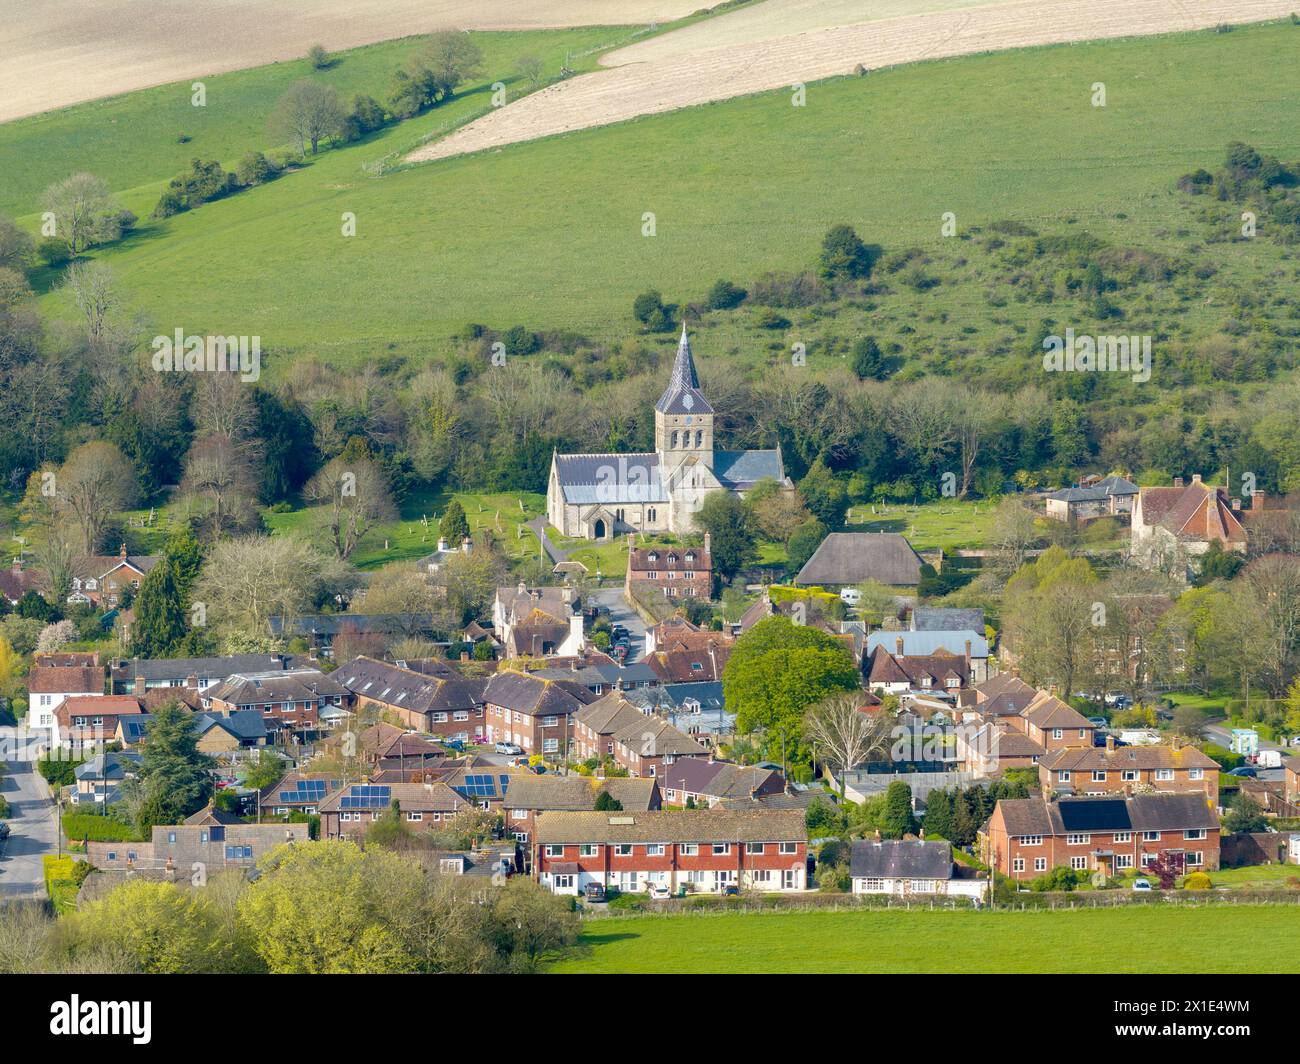 Das Dorf East Meon liegt in den South Downs in der Landschaft von Hampshire. Aus der Vogelperspektive mit Blick auf die All Saints Church im Norden. Stockfoto